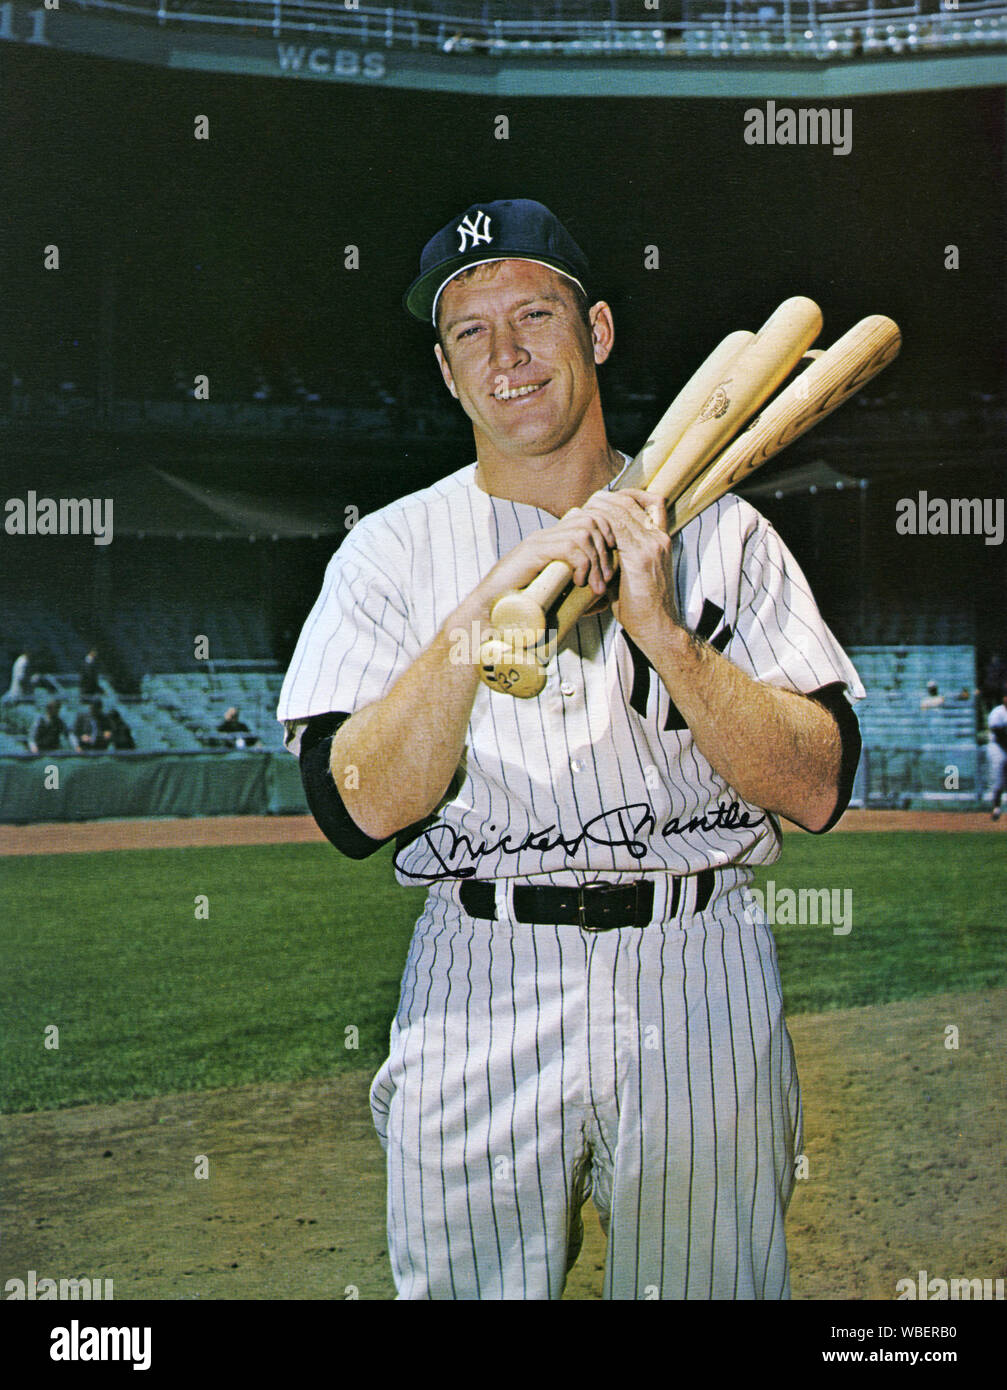 Plantea fotografía de Mickey Mantle el legendario jugador de béisbol Yankee de Nueva York en la década de los 50s y 60s. Foto de stock